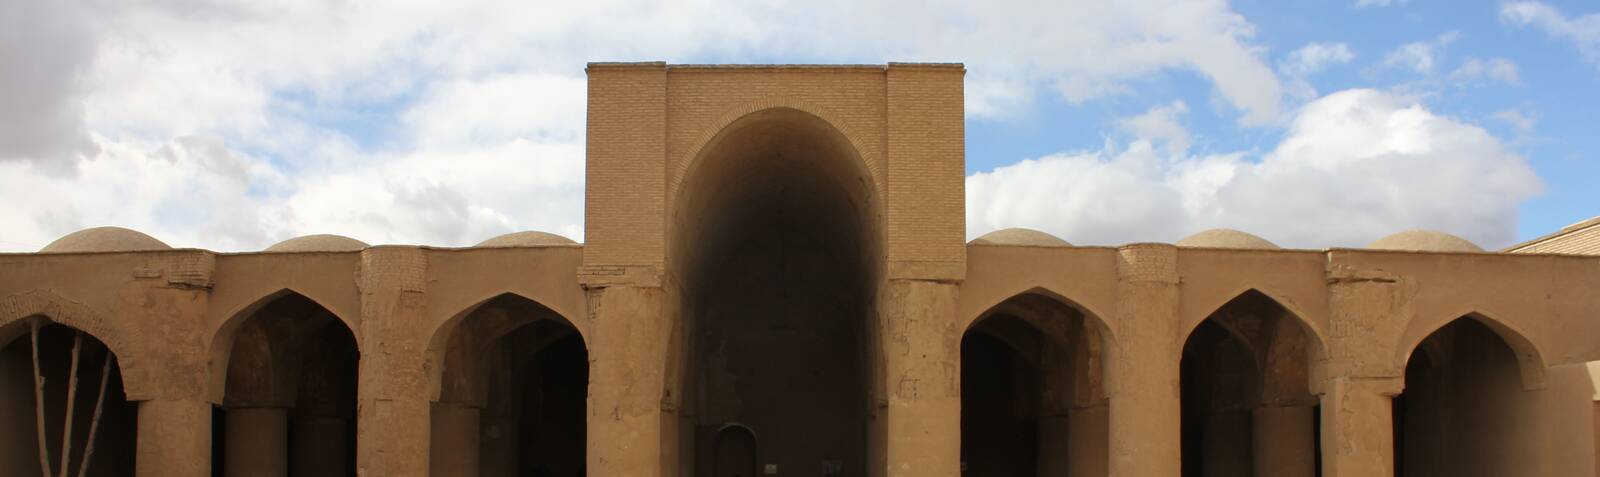 تاريخانية (مسجد)